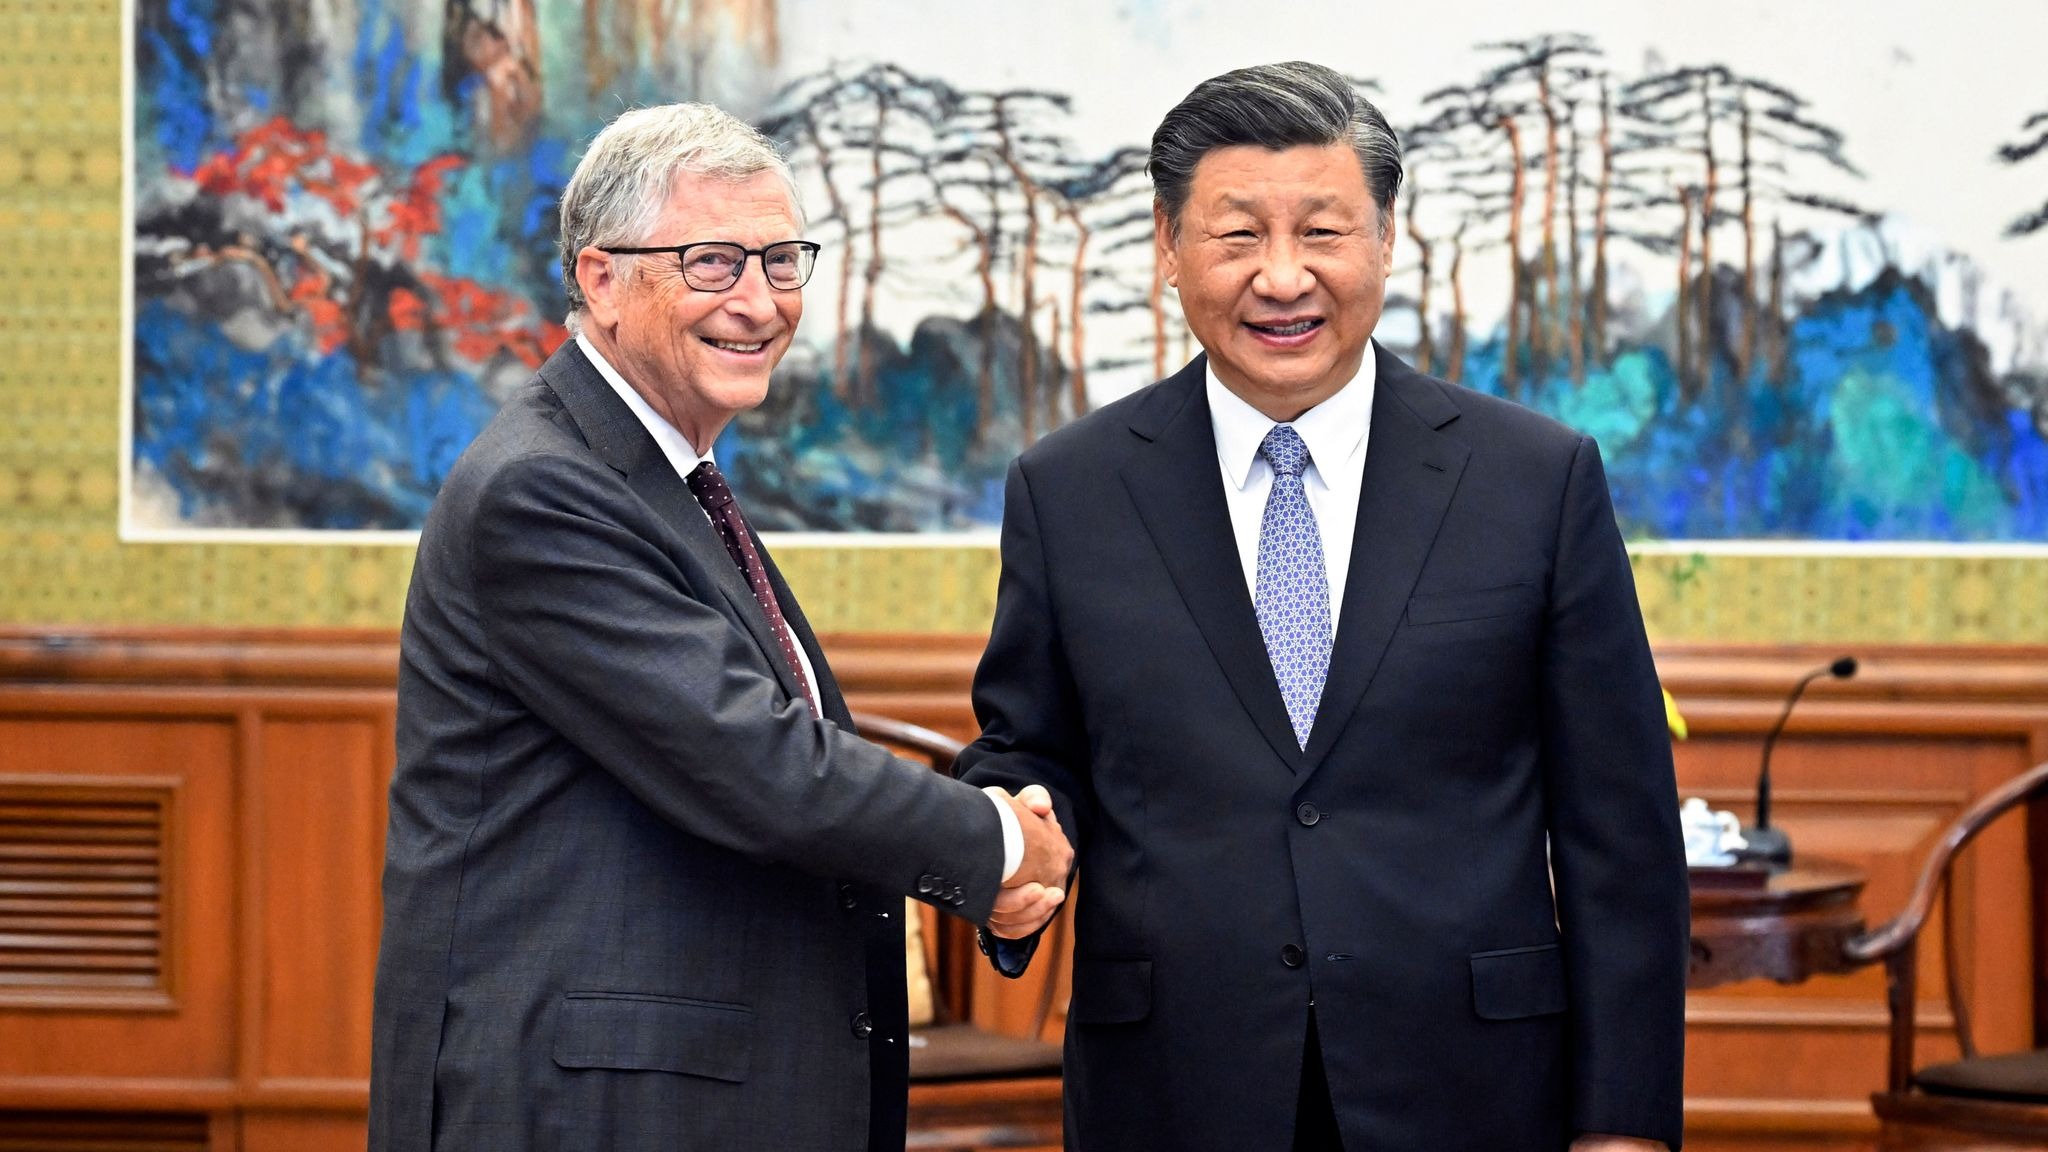 Bill Gates with Xi Jinping